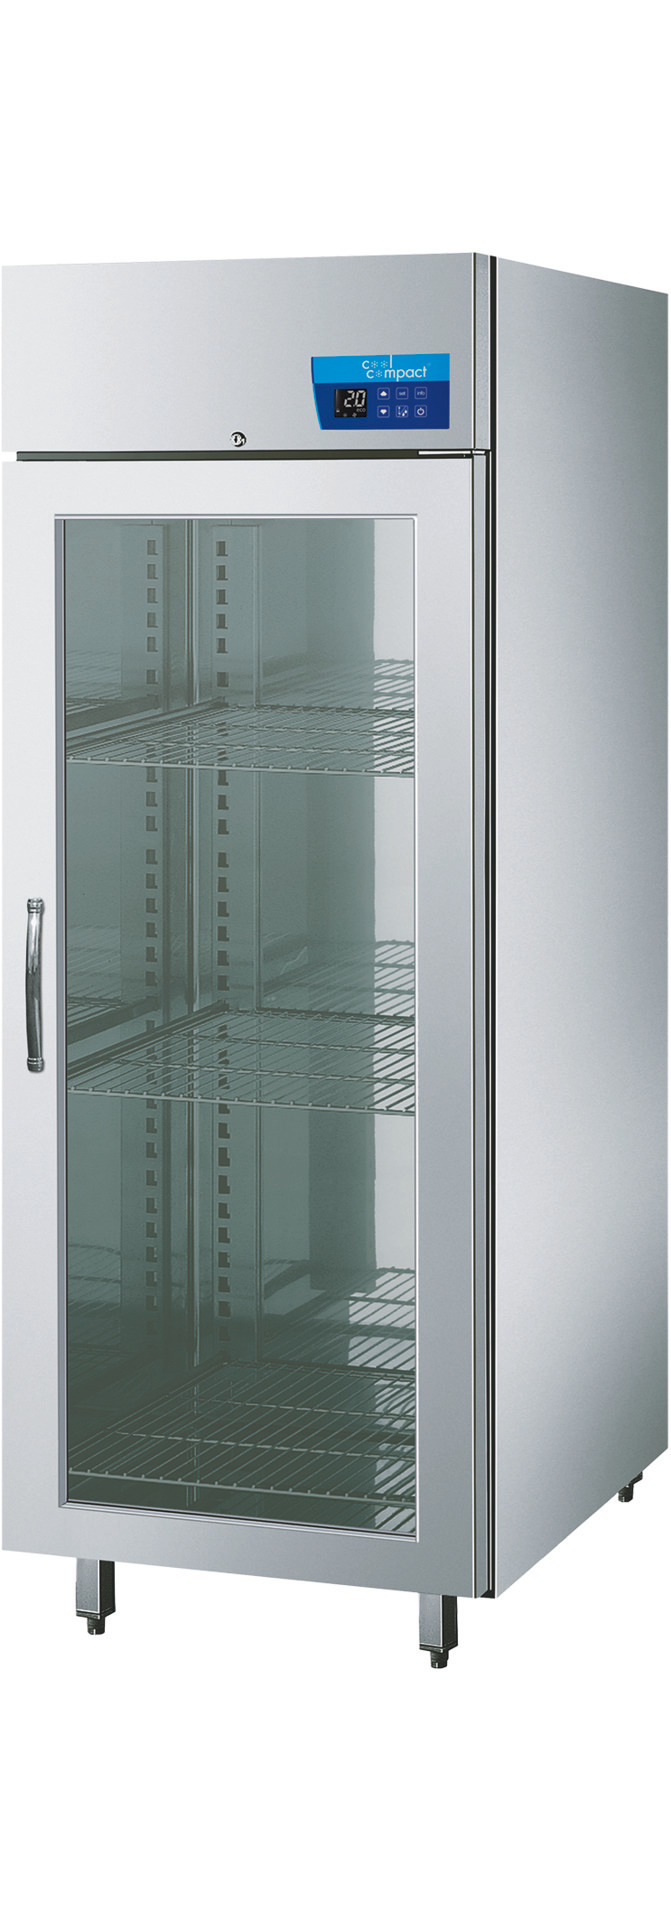 Umluft-Glastürtiefkühlschrank  21 x GN 1/1 / steckerfertig